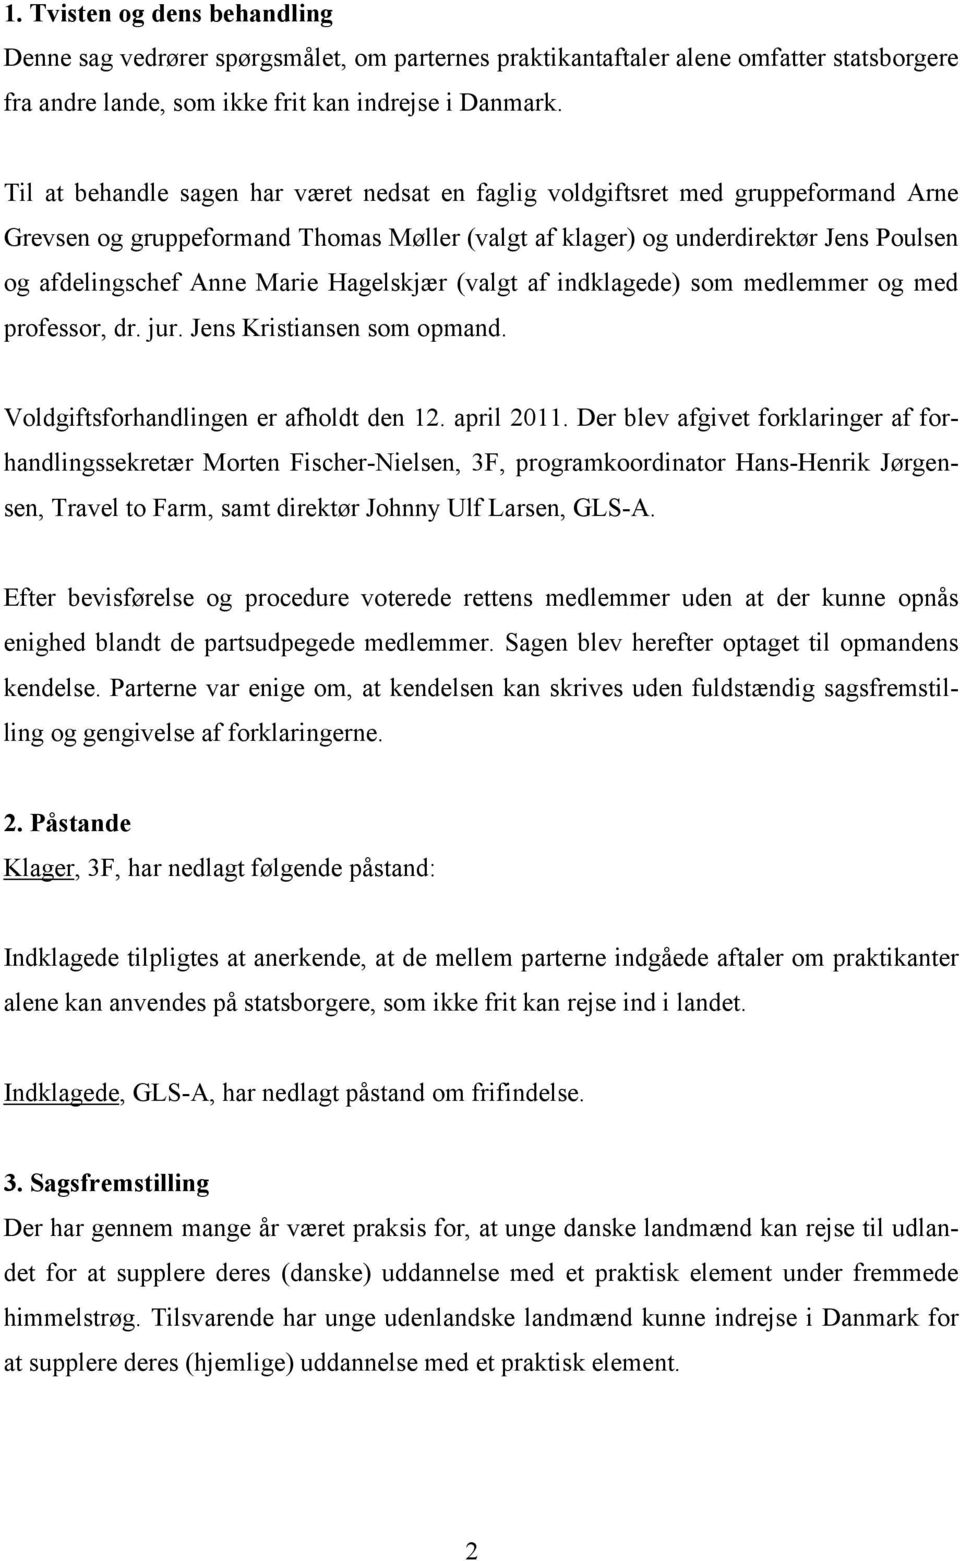 Hagelskjær (valgt af indklagede) som medlemmer og med professor, dr. jur. Jens Kristiansen som opmand. Voldgiftsforhandlingen er afholdt den 12. april 2011.